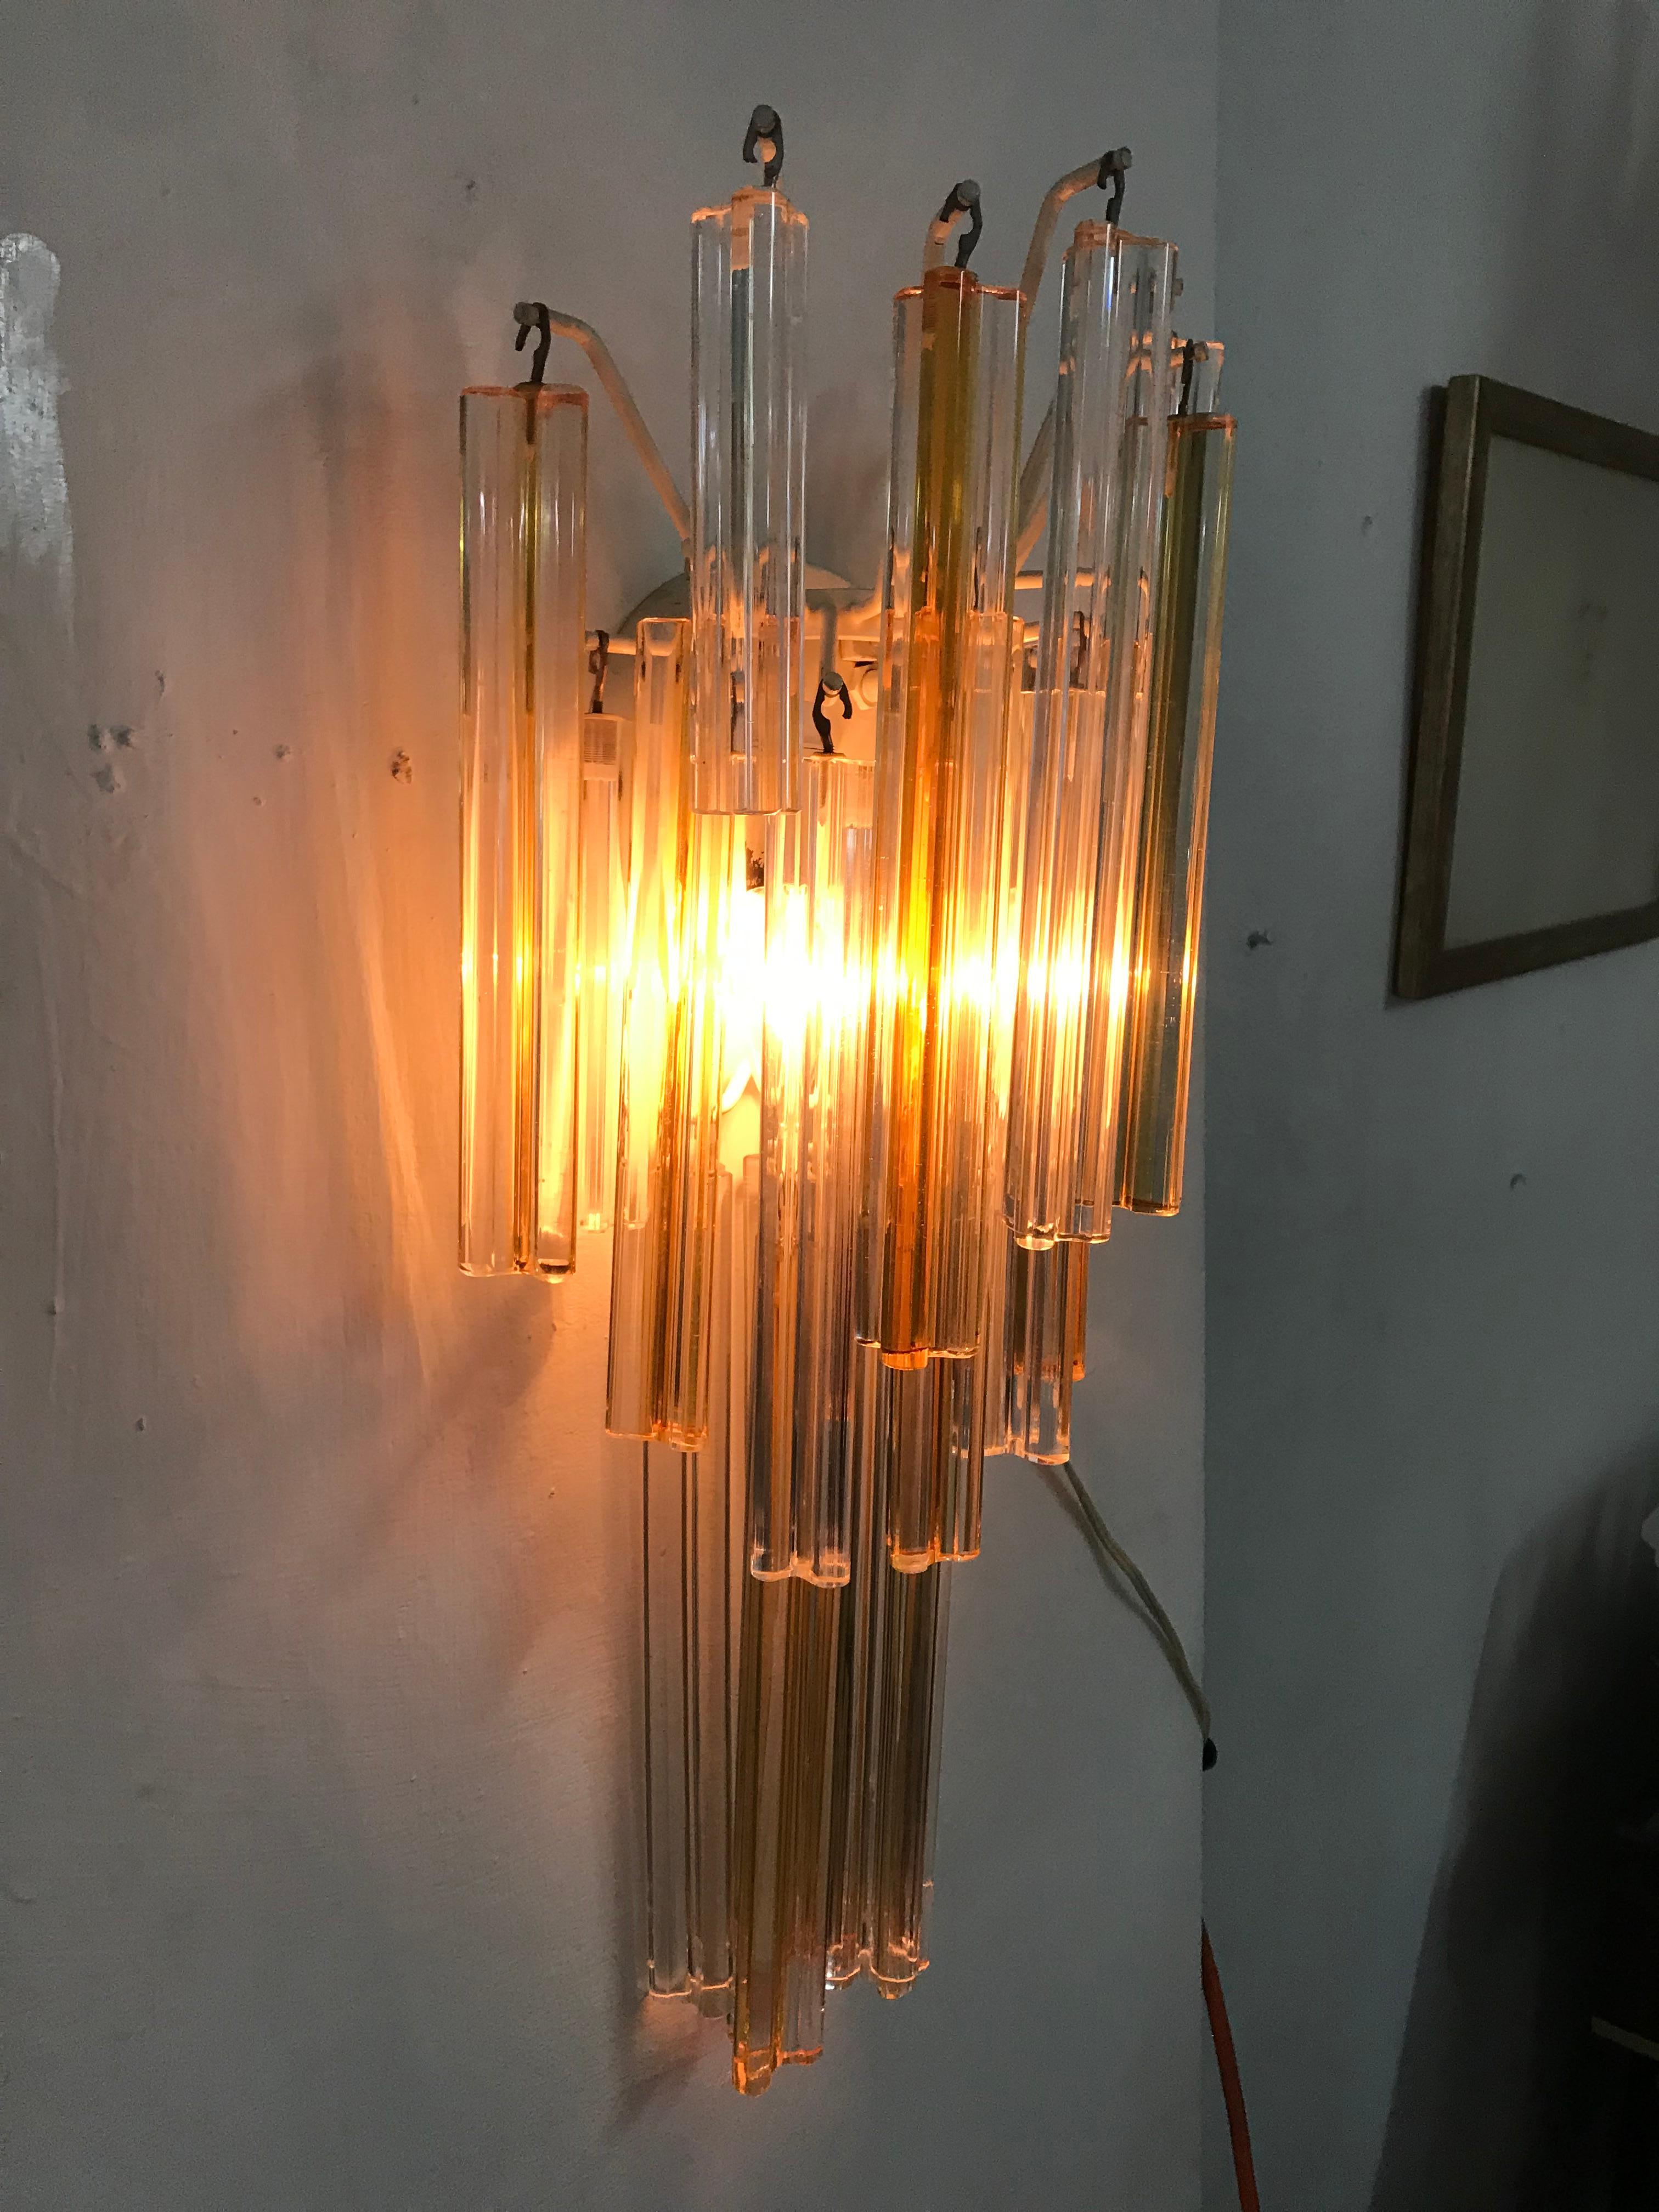 Paar Mid-Century Modern-Leuchten Modell 'Asta Triedo', entworfen von Paolo Venini für Venini und hergestellt um 1960, in drei verschiedenen Längen von Lanzen aus bernsteinfarbenem und klarem Muranoglas, die verwendet werden können, um die